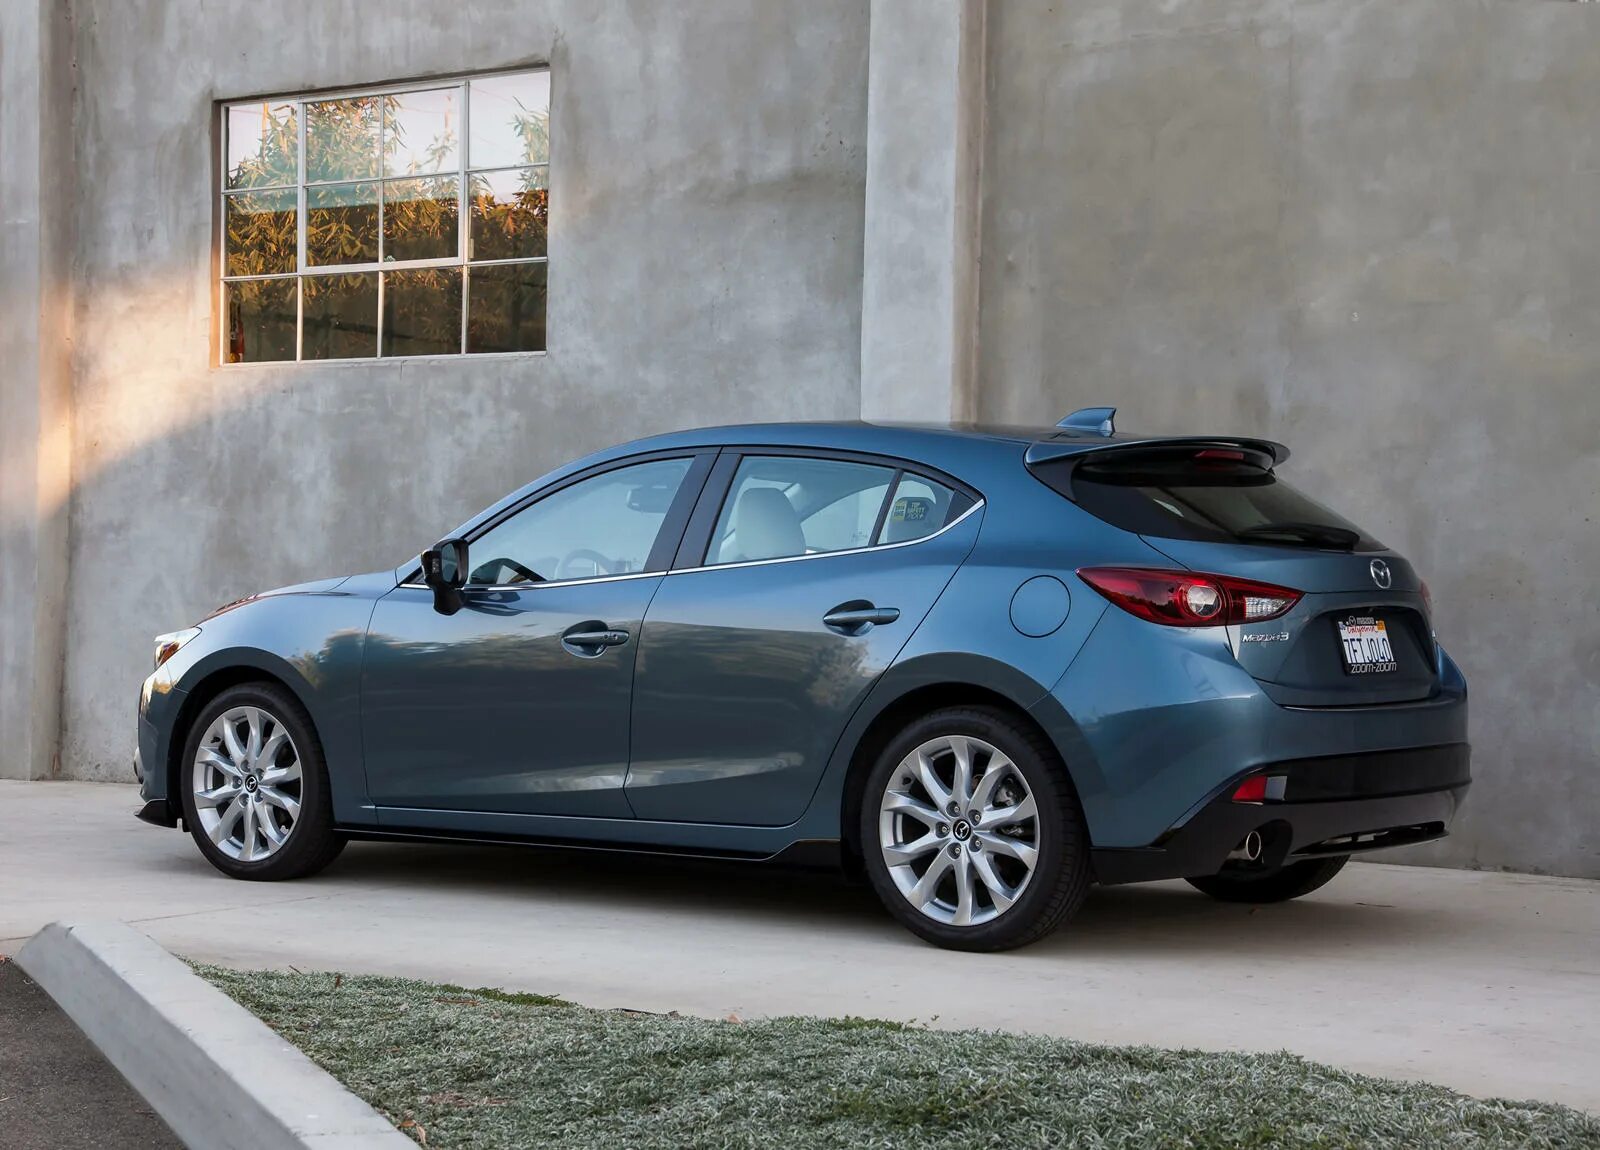 Mazda 3 2015 Hatchback. Мазда 3 хэтчбек 2015. Мазда Аксела 2015 хэтчбек. Mazda 3 2016.